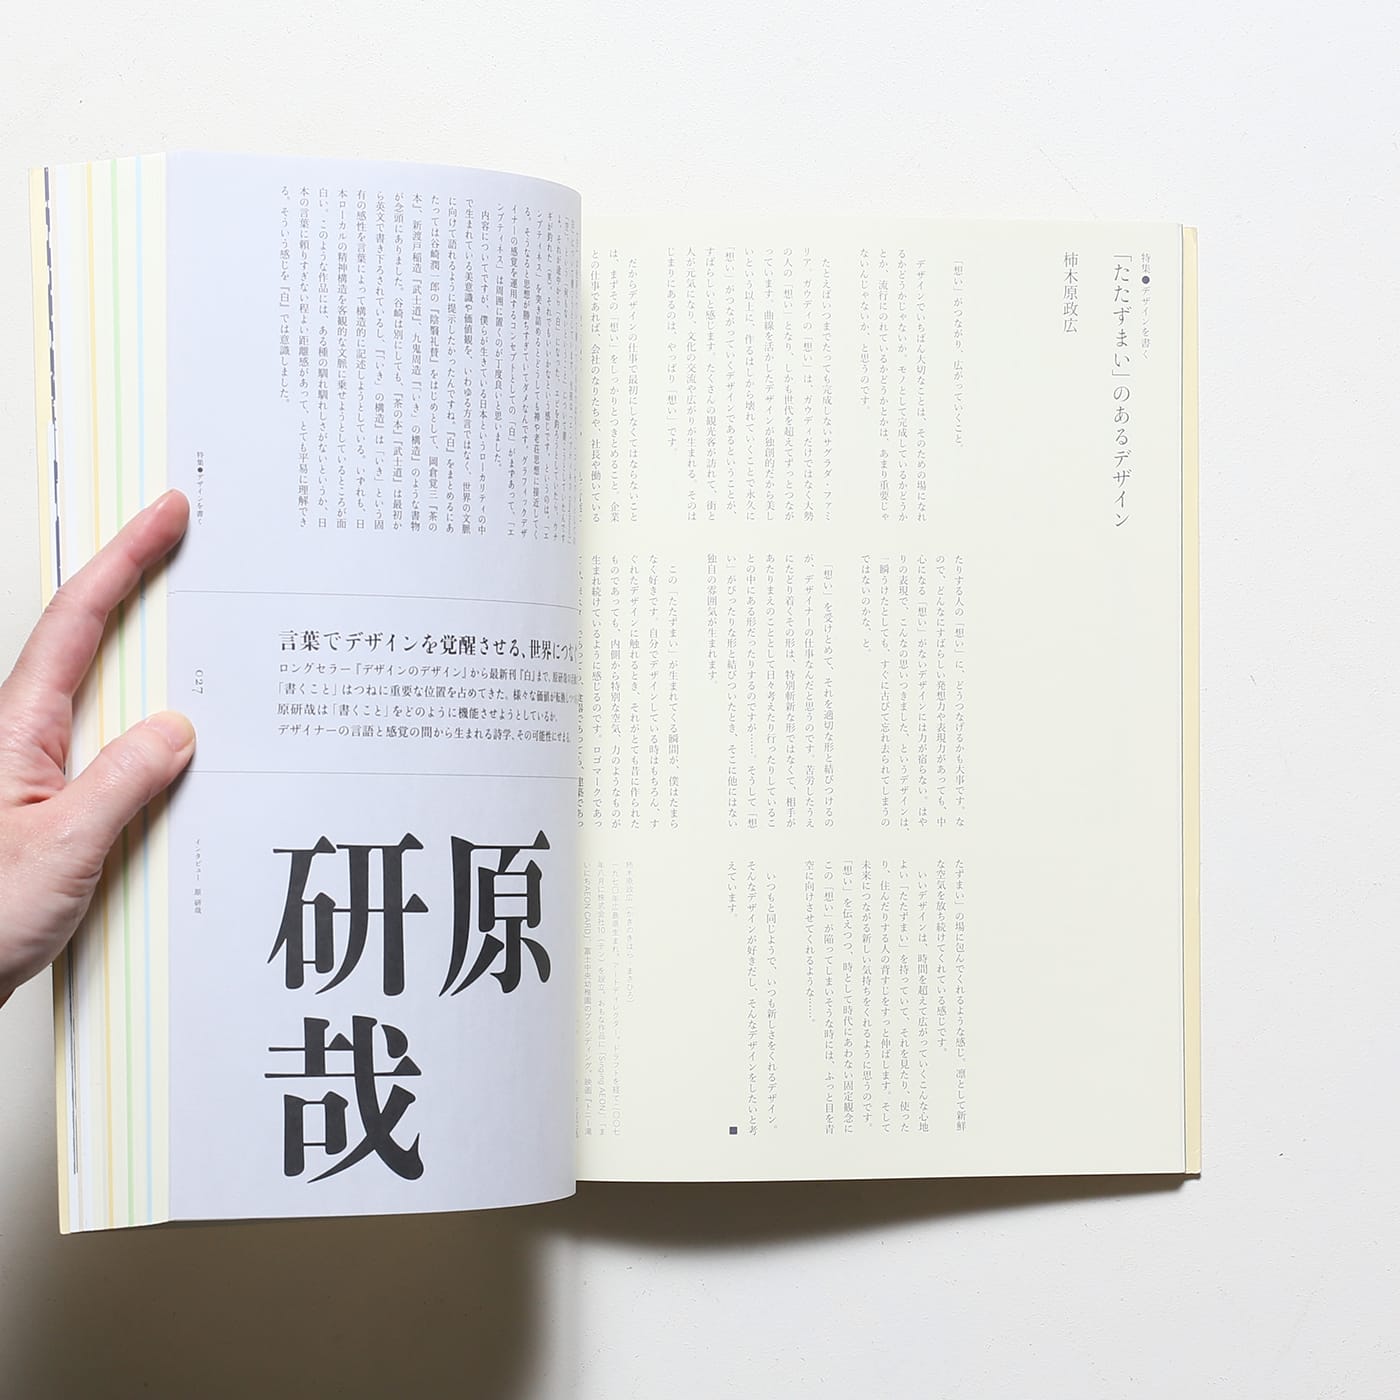 設計中的設計 设计中的设计 デザインのデザイン原研哉中国語版 - 洋書